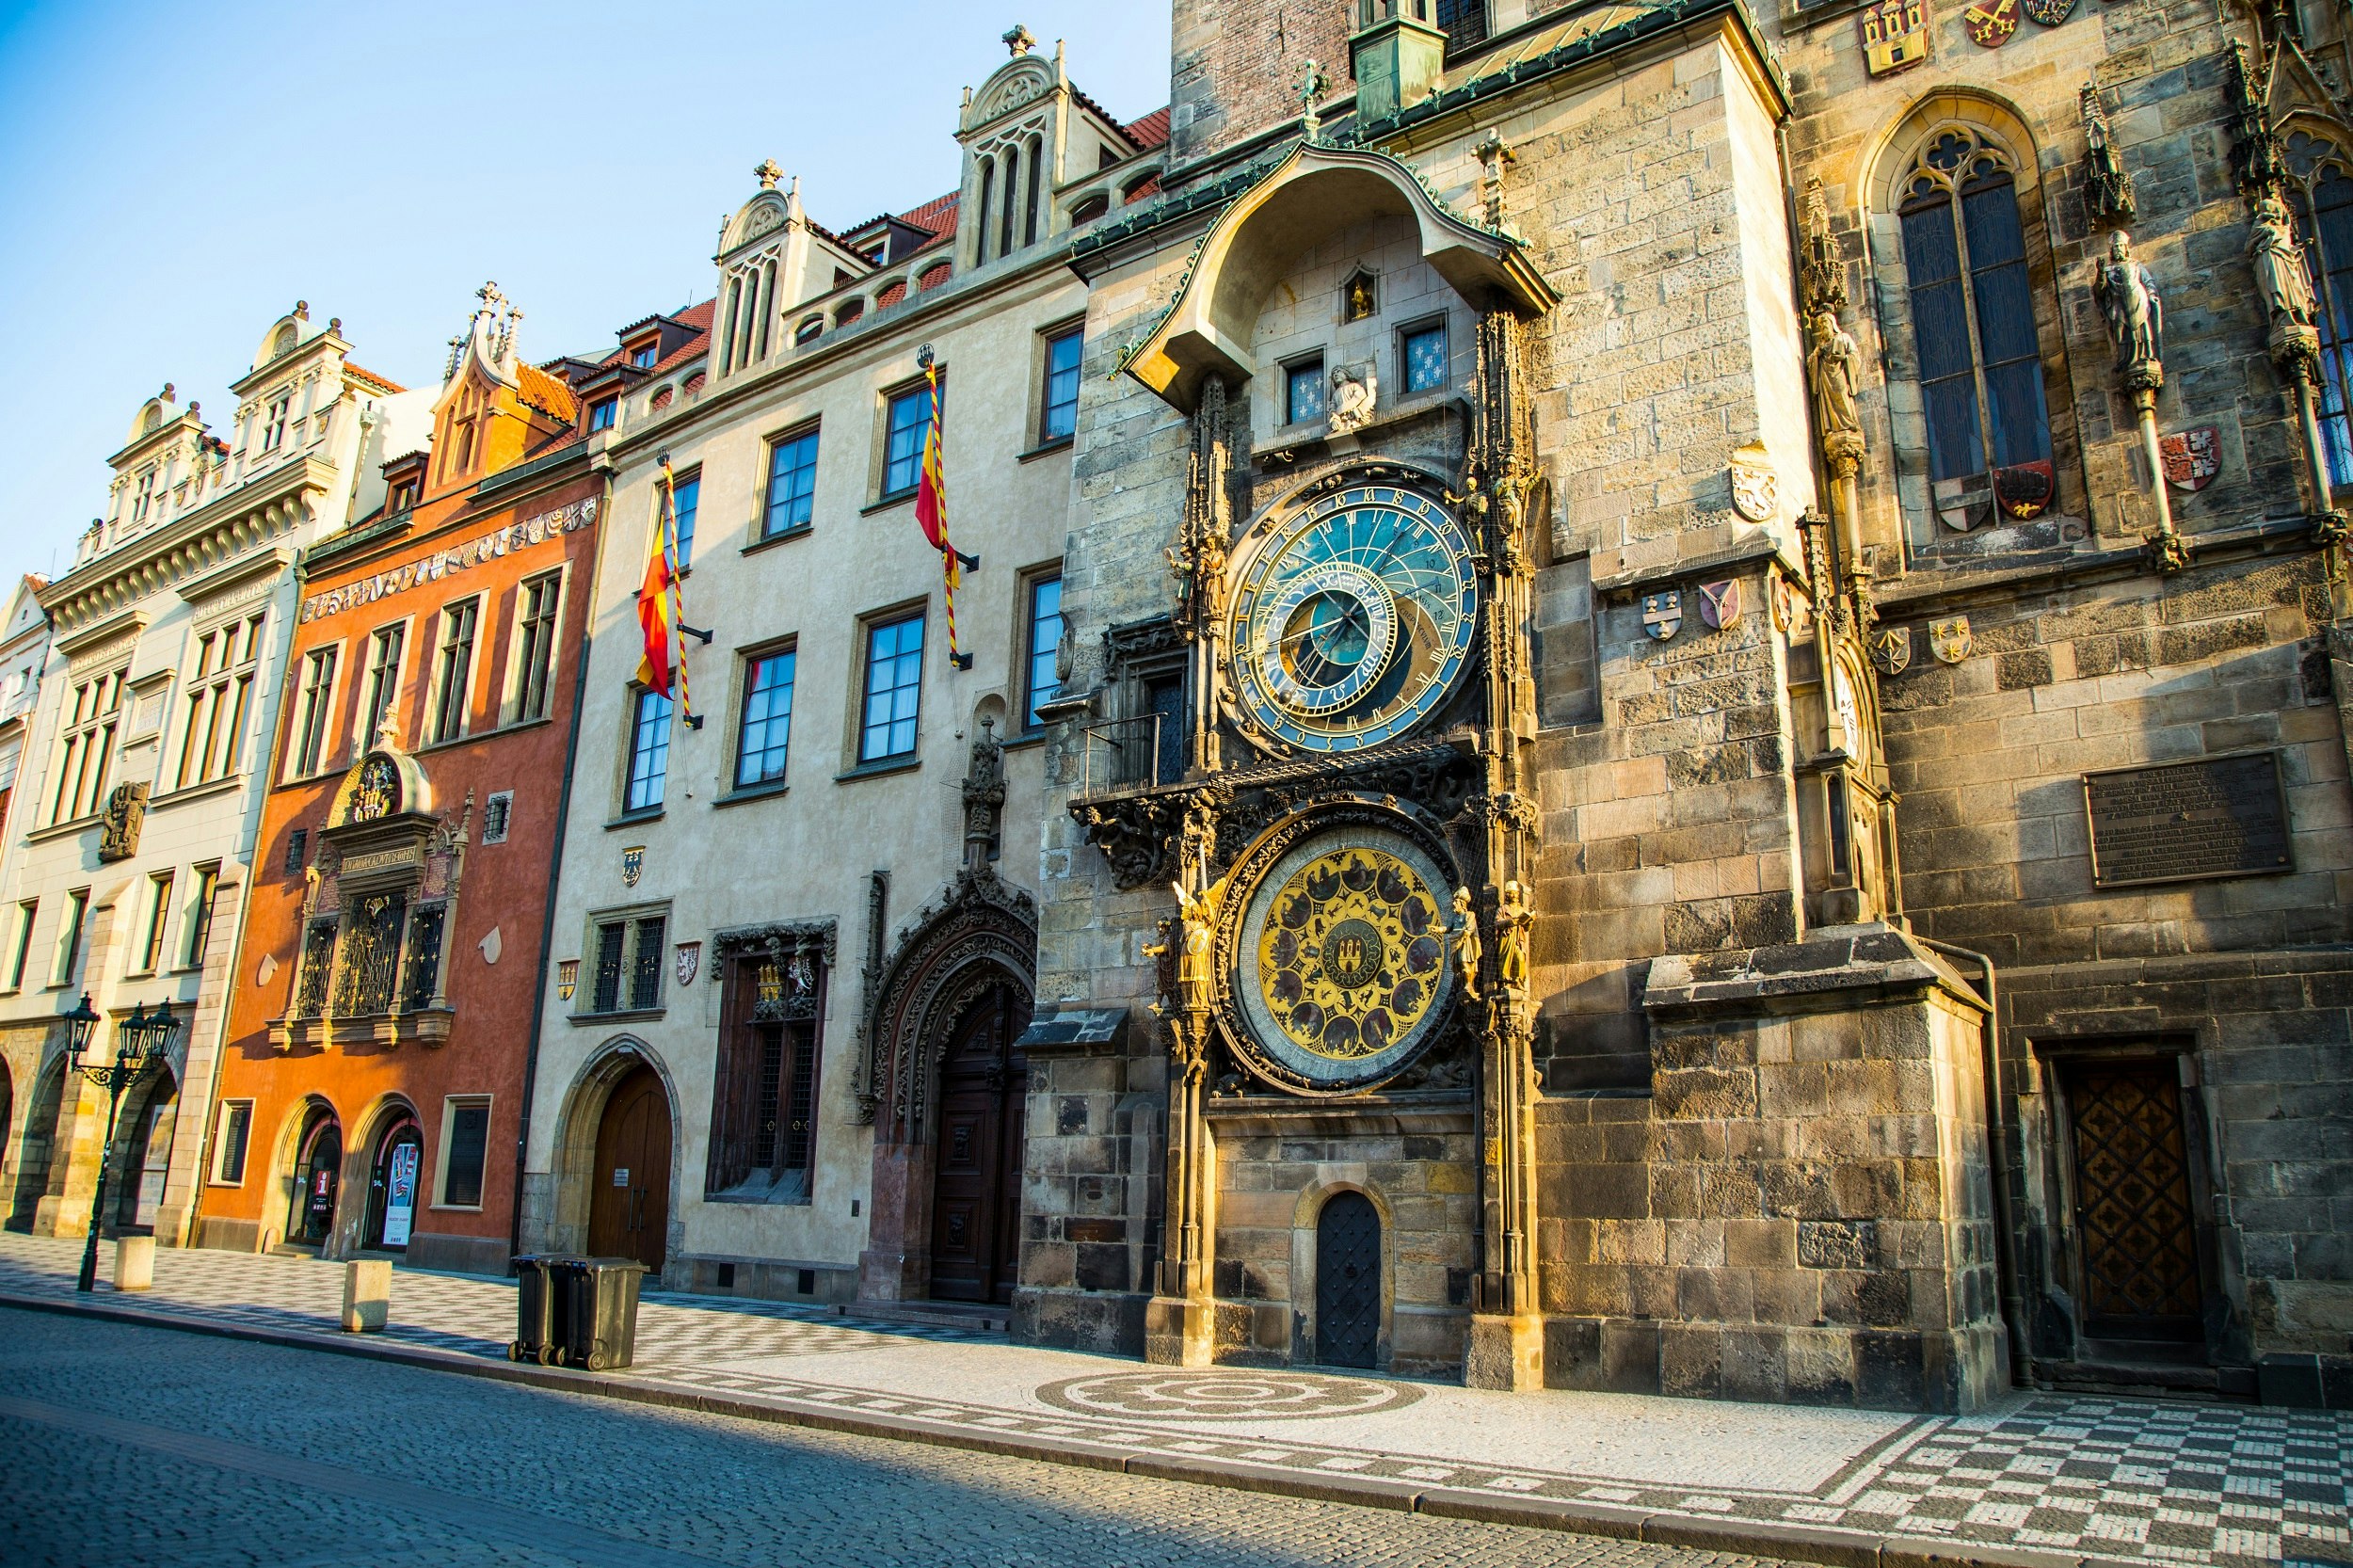 До 3 часов была в городе. Куранты Орлой Прага. Часы Орлой в Праге. Астрономические часы Орлой в Праге. Часы Прага Староместская площадь.